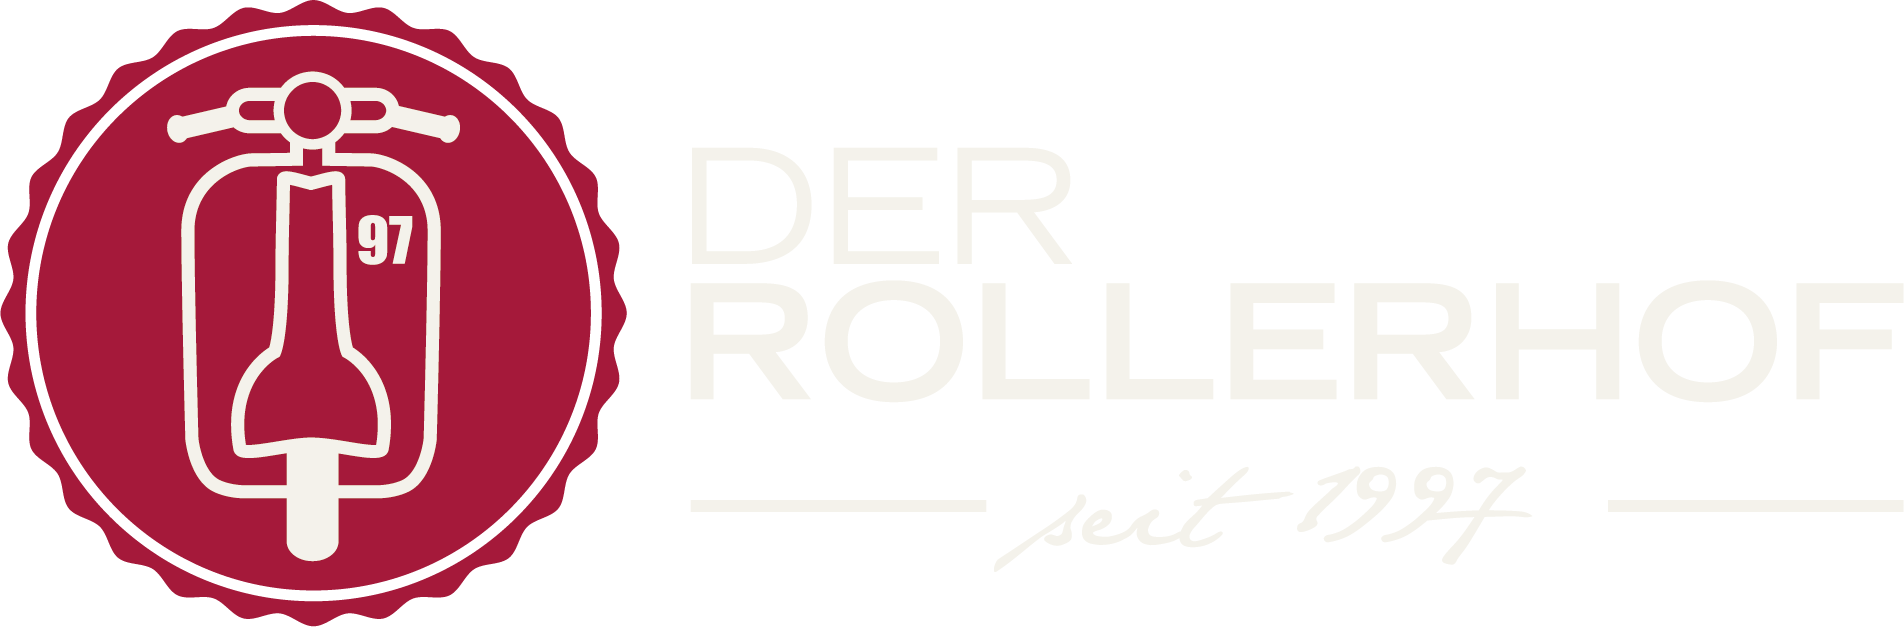 DER-ROLLERHOF